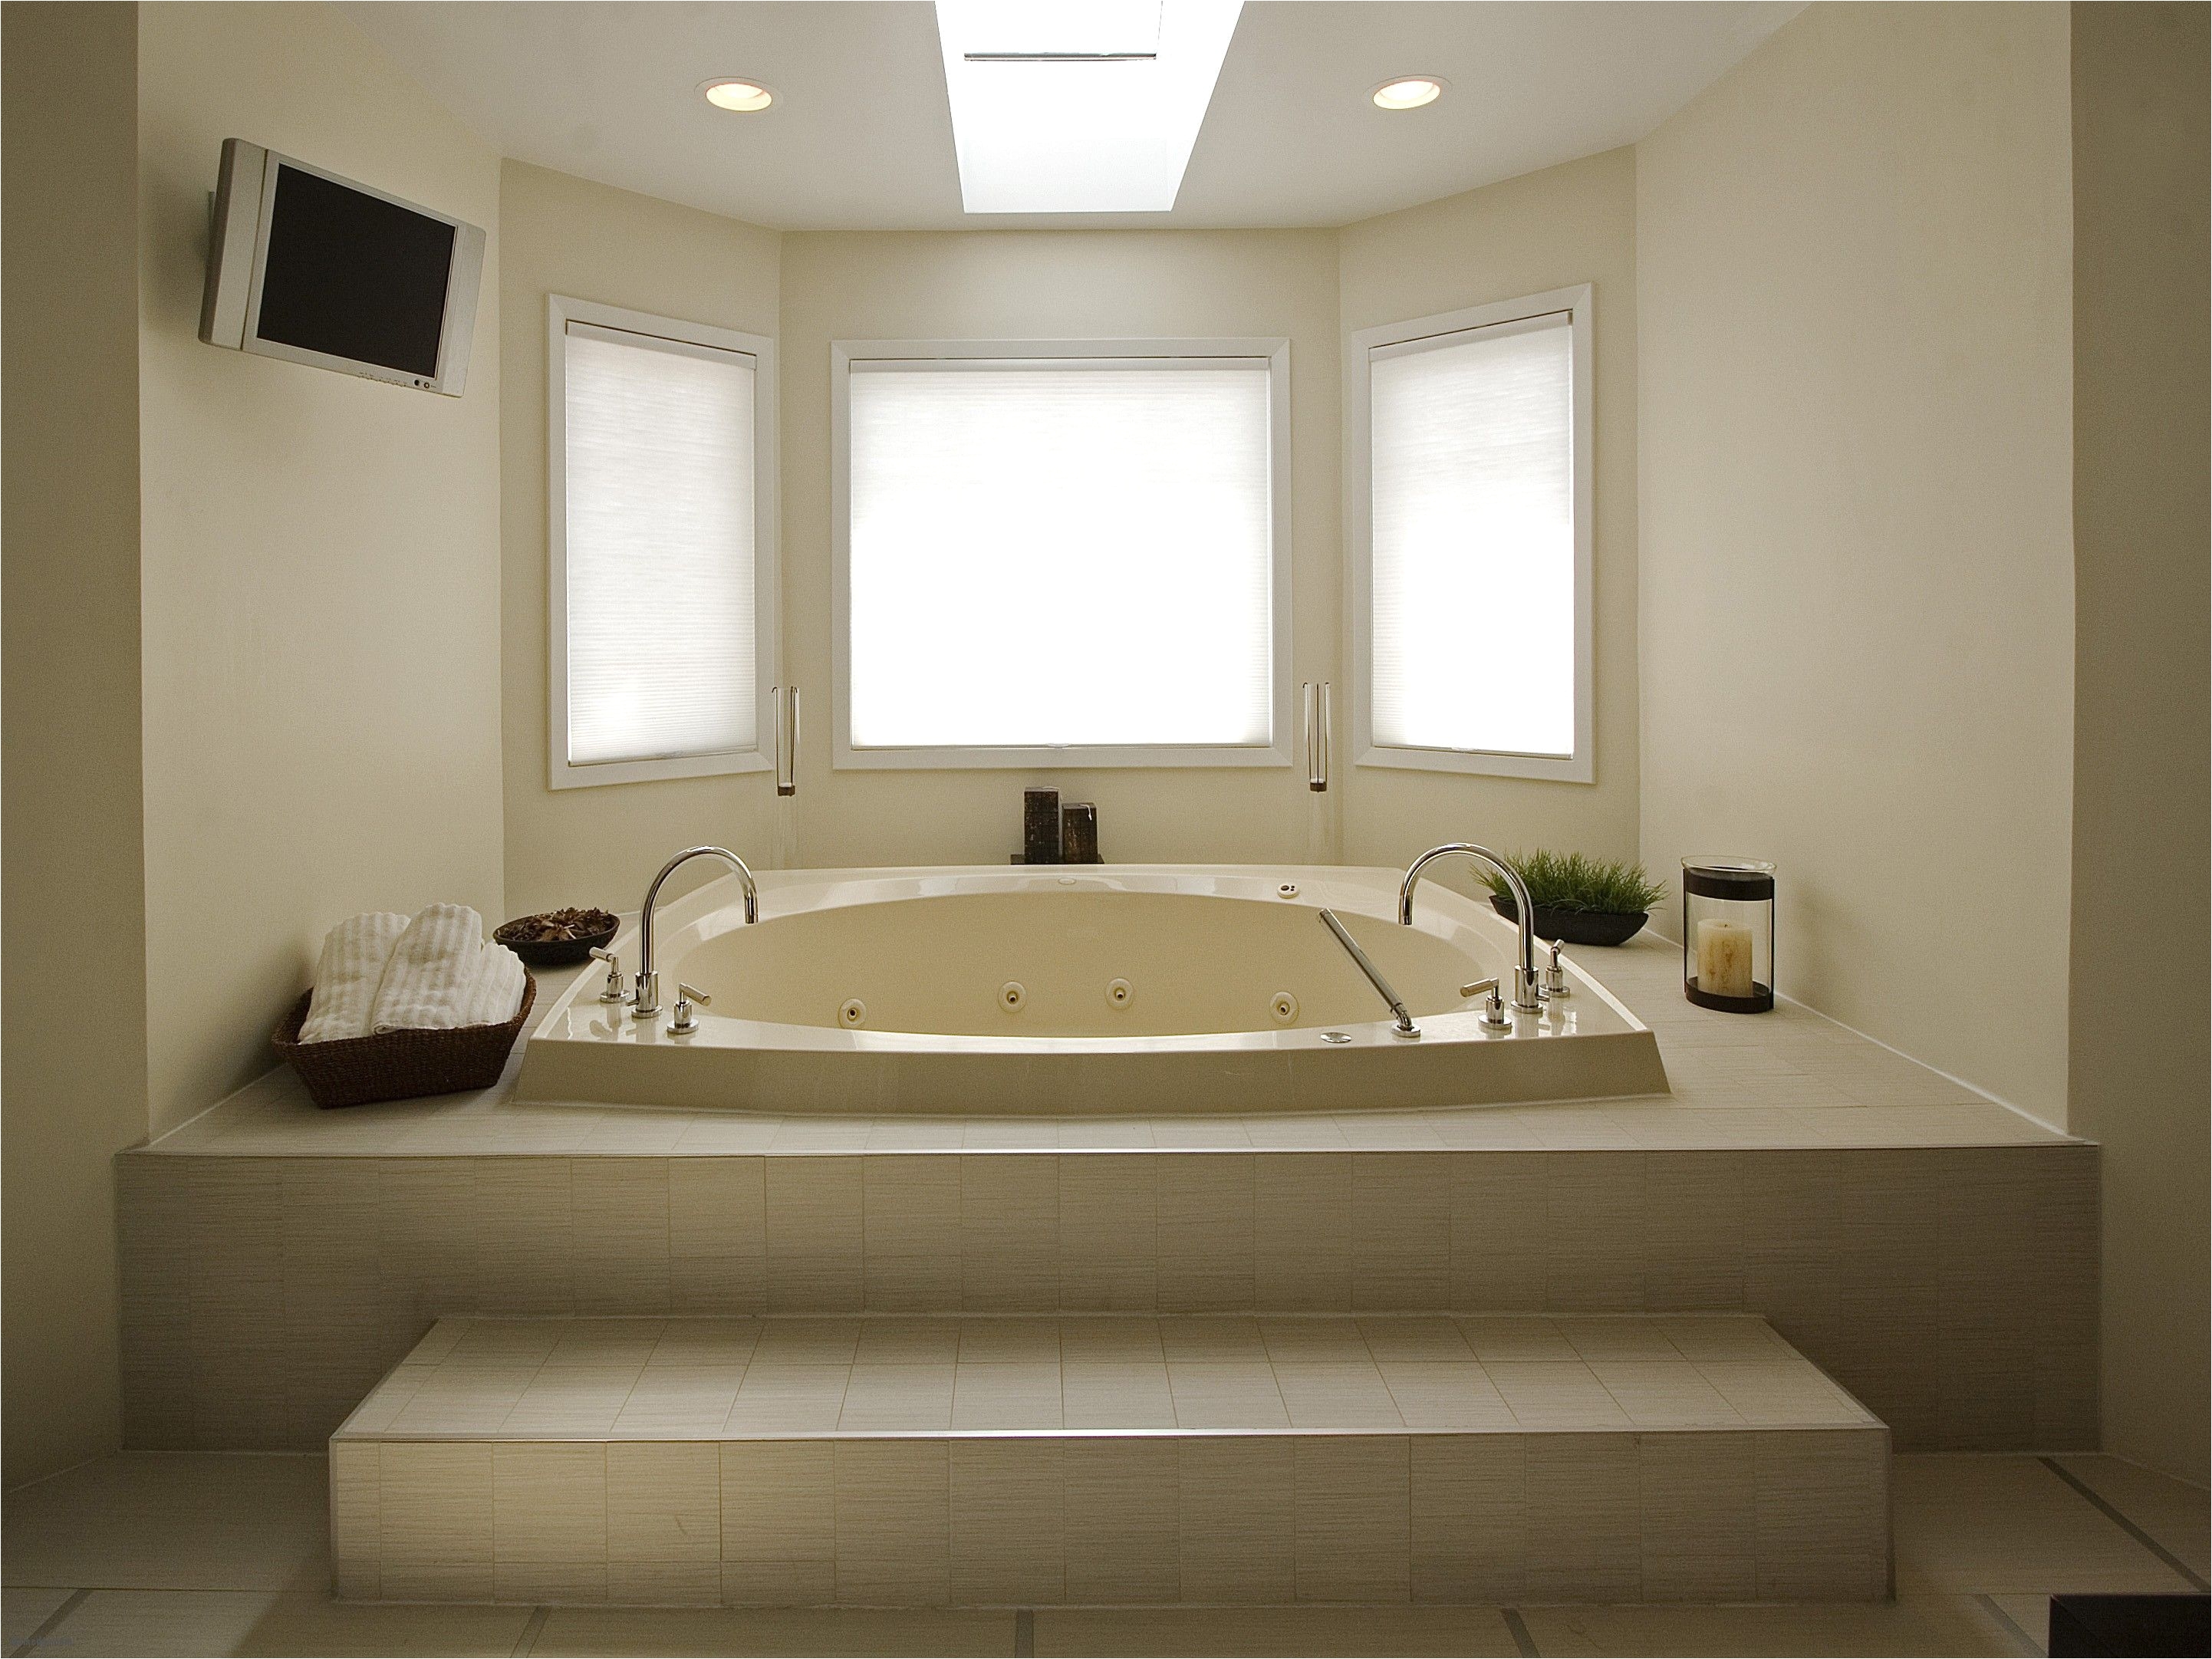 cool Best Bathtubs Bathtubs Choosing bathroom fixtures design choose floor plan japanese